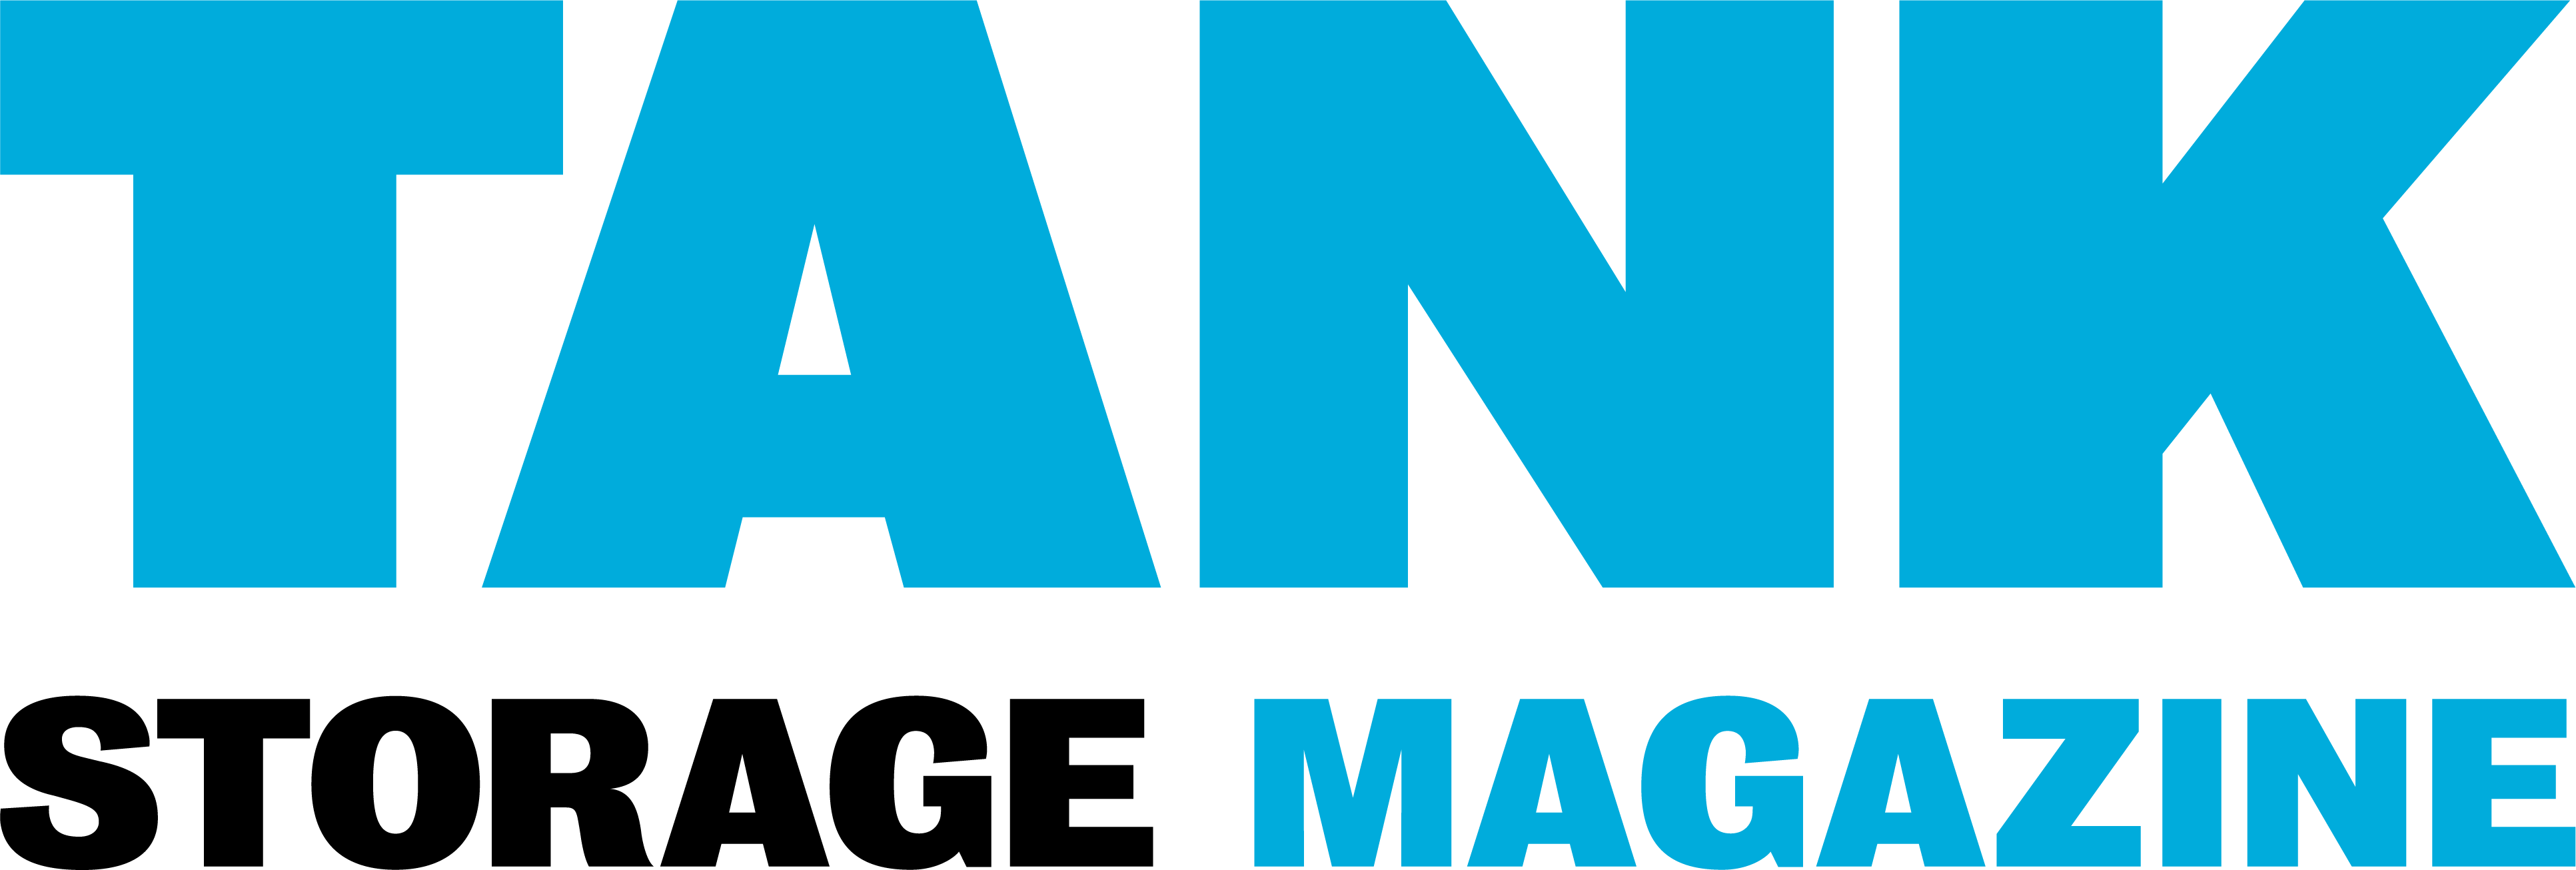 Tsmagazine Logo Black